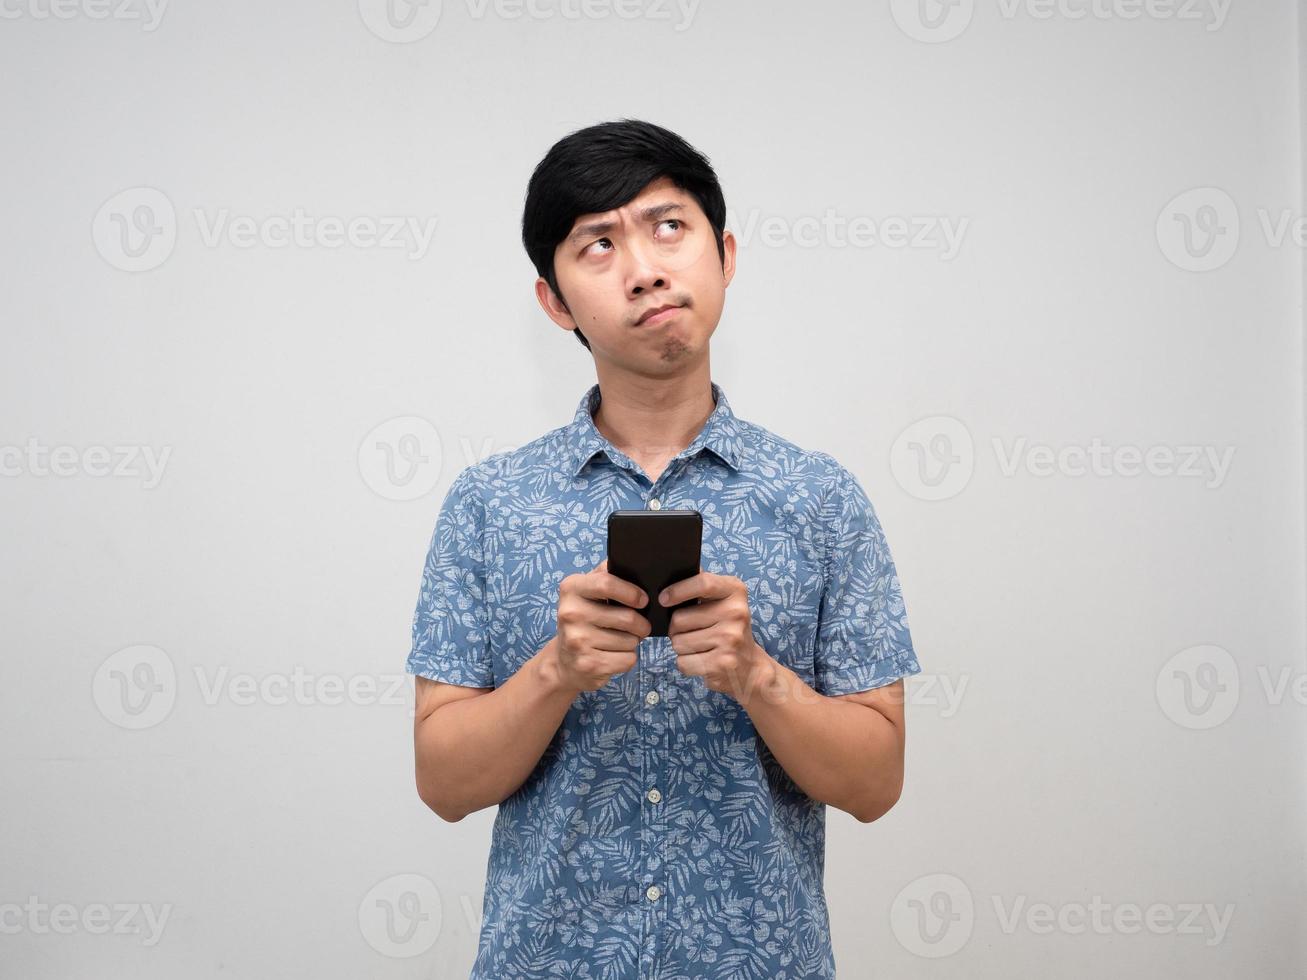 Aziatisch Mens blauw overhemd Holding mobiel telefoon gebaar denken iets en voelt verward geïsoleerd foto